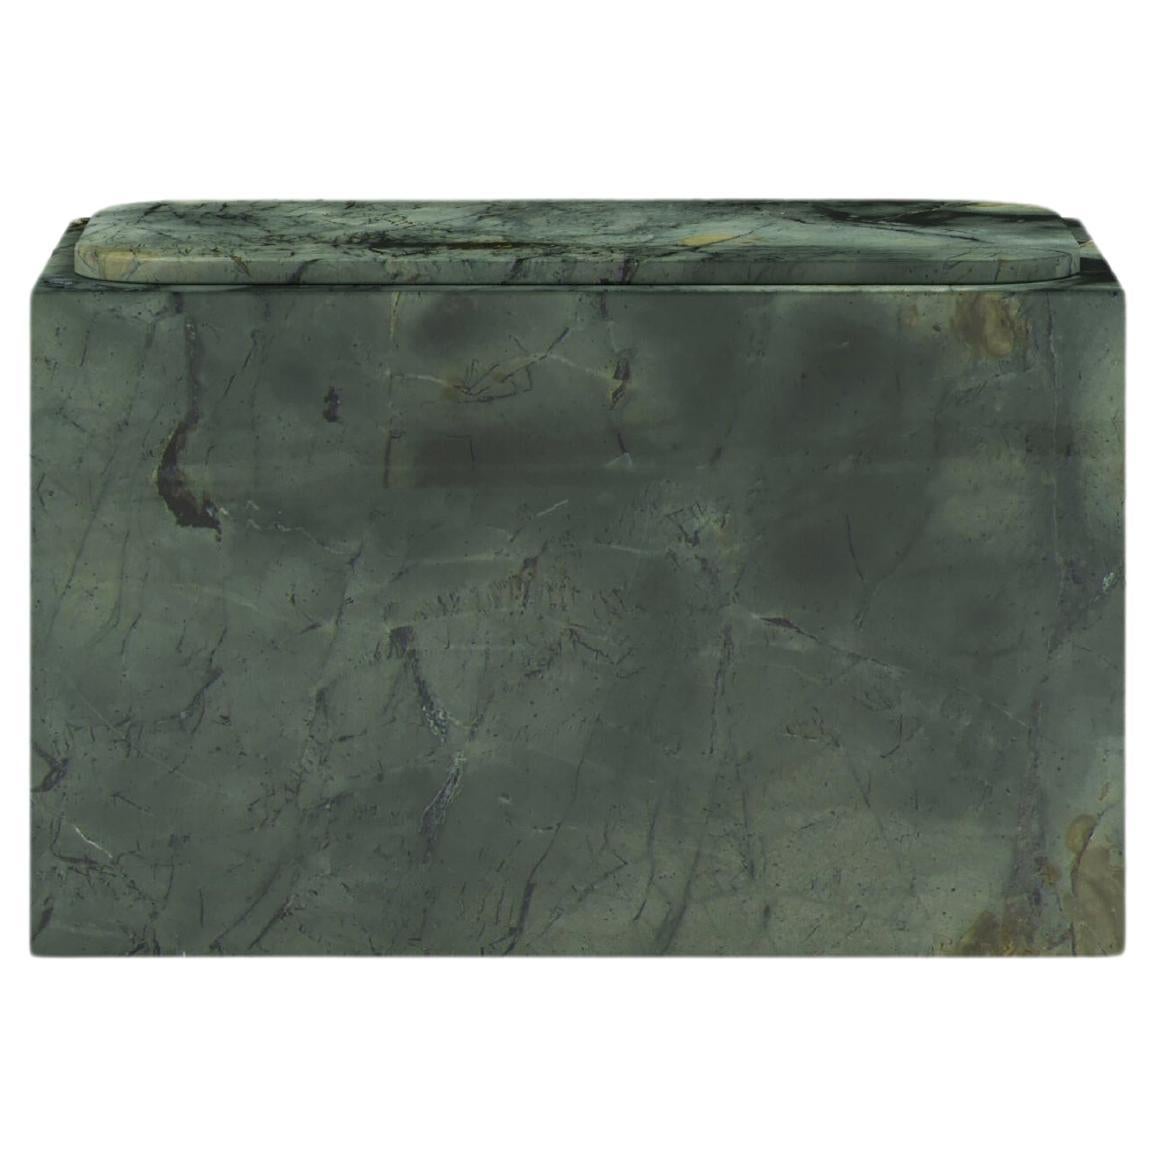 FORM(LA) Cubo Rectangle Side Table 30”L x 16"W x 19”H Verde Edinburgh Marble